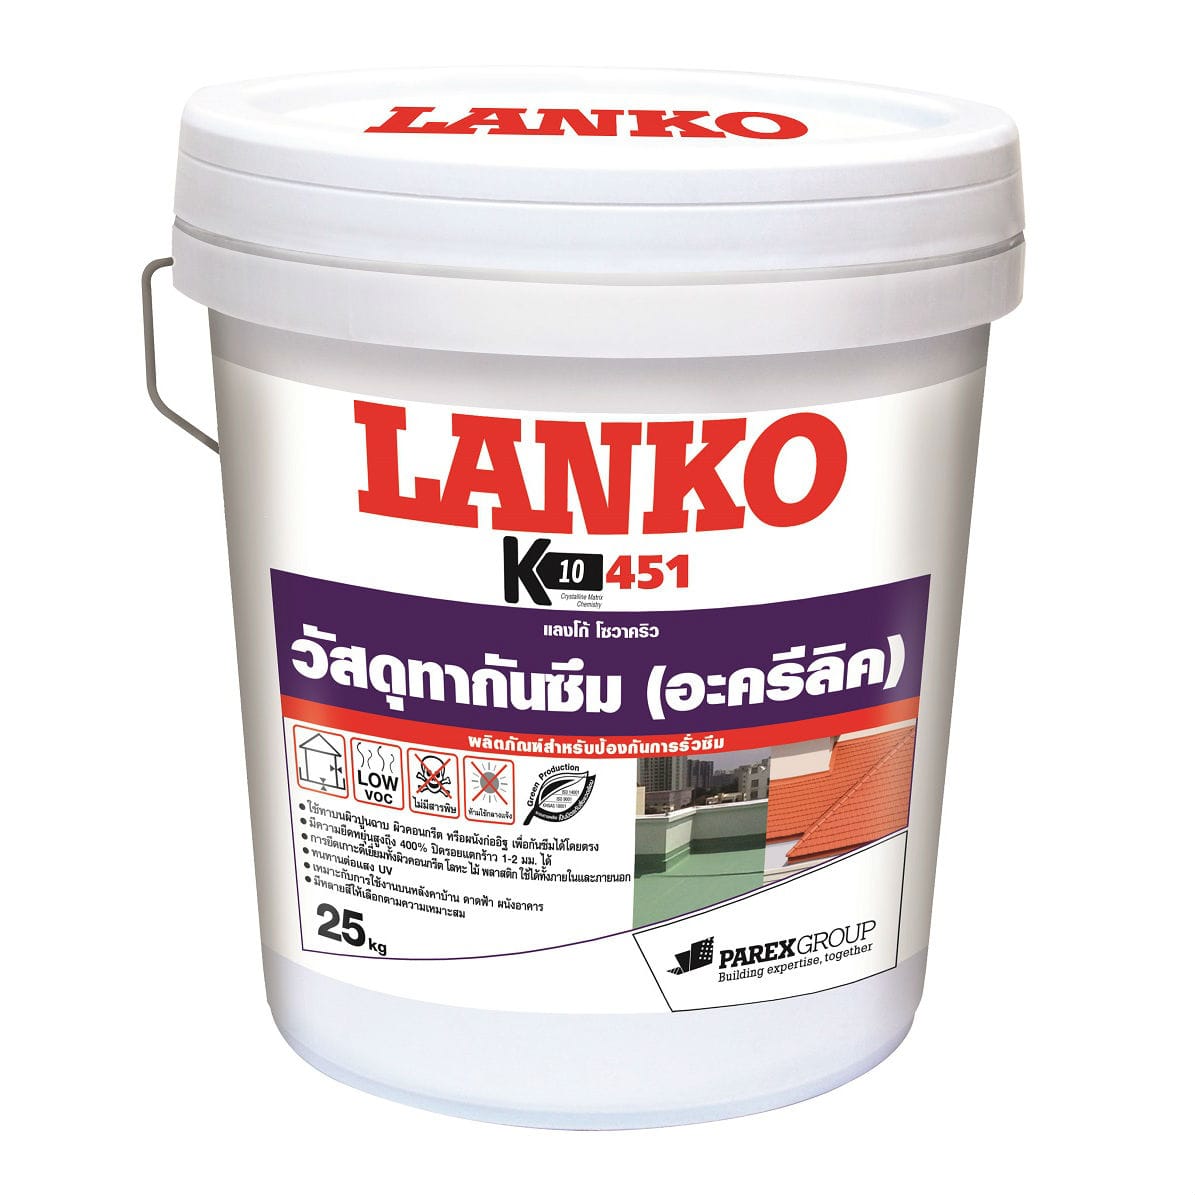 จำหน่ายสินคัาแลงโก้(Lanko) 451 และผลิตภัณฑ์ แลงโก้(Lanko) ทุกชนิด ราคาพิเศษ โทร.087-563-8543, 086-323-4925 รูปที่ 1